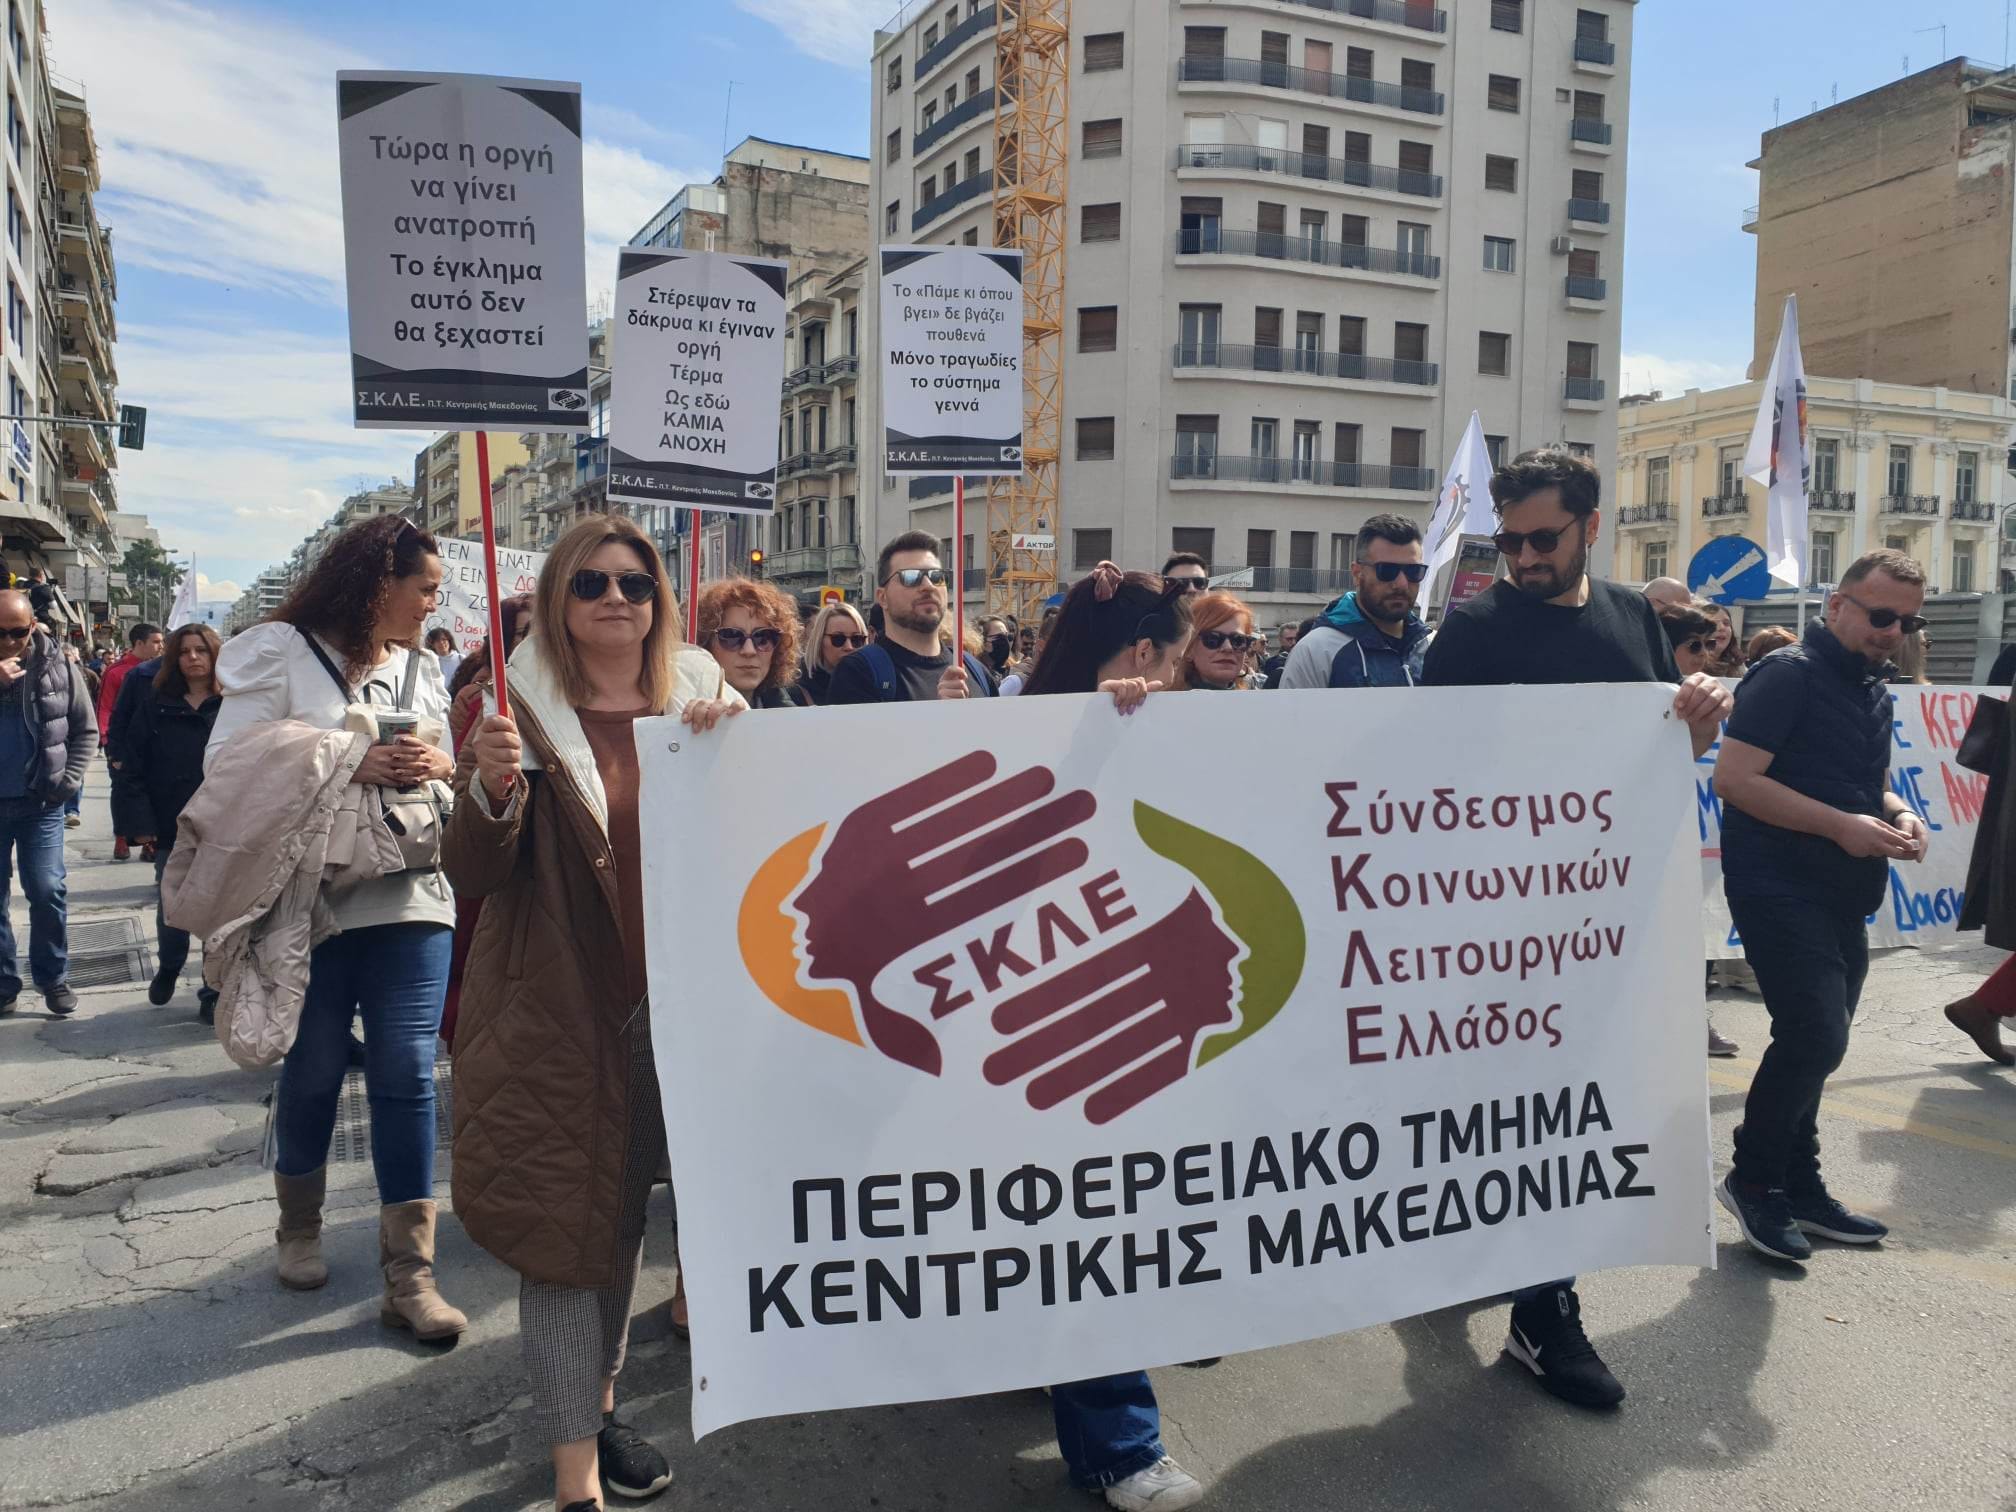 24ωρη απεργία στις 21 Μαρτίου πραγματοποιεί ο Σύνδεσμος Κοινωνικών Λειτουργών Ελλάδος